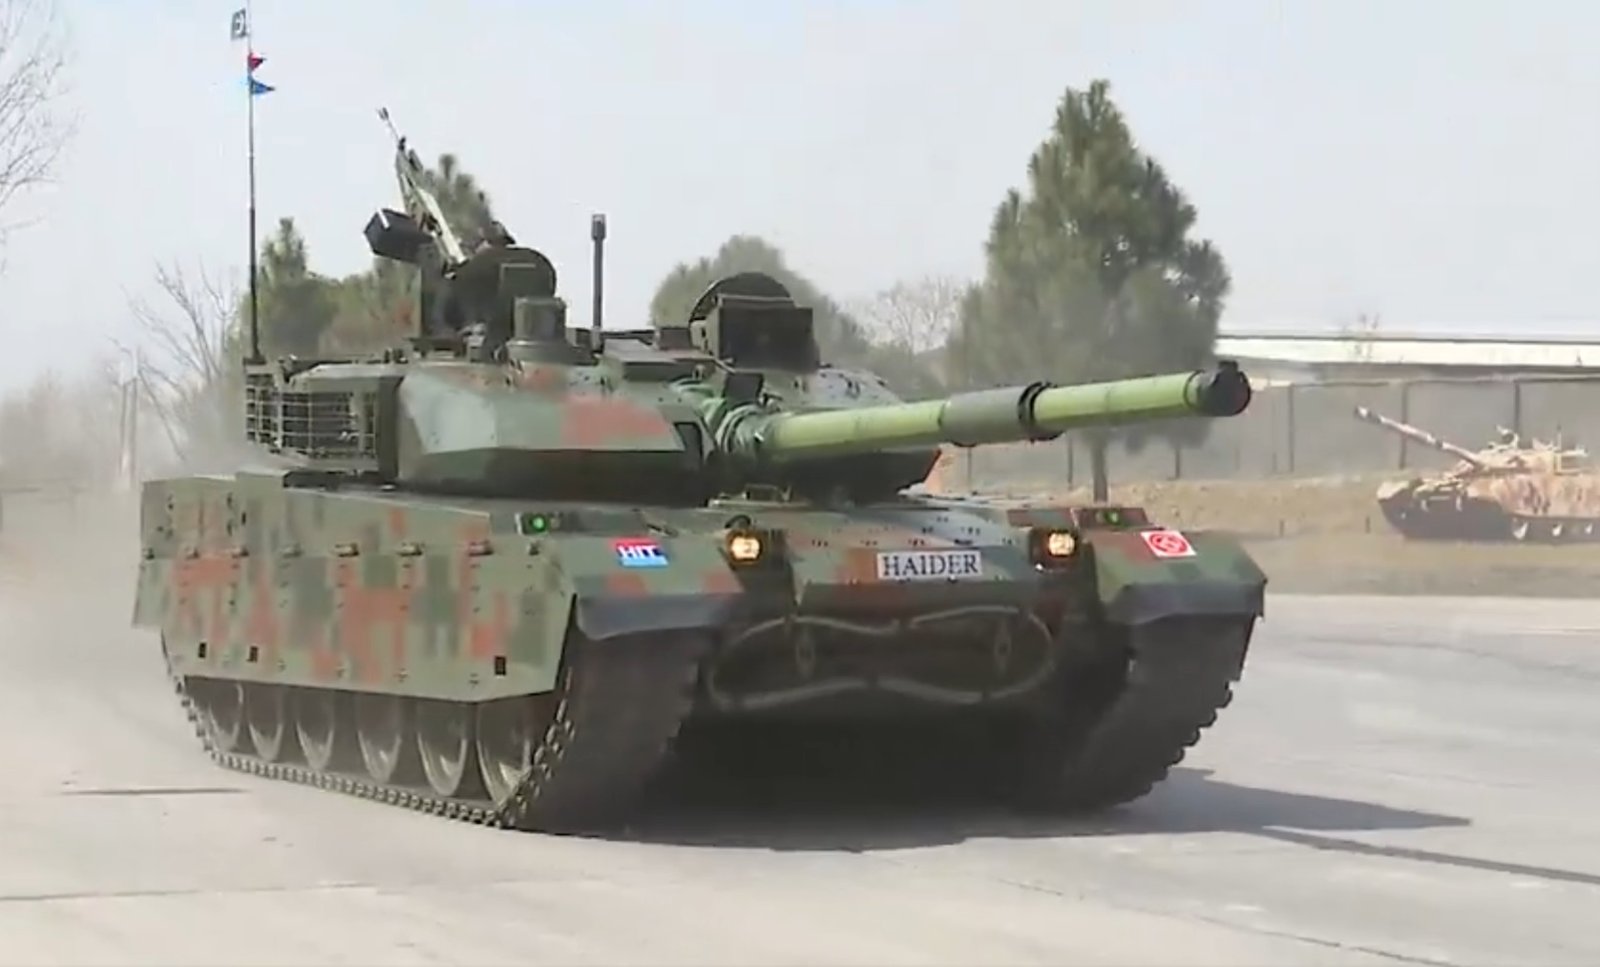 Pakistan unveils new Haider main battle tank